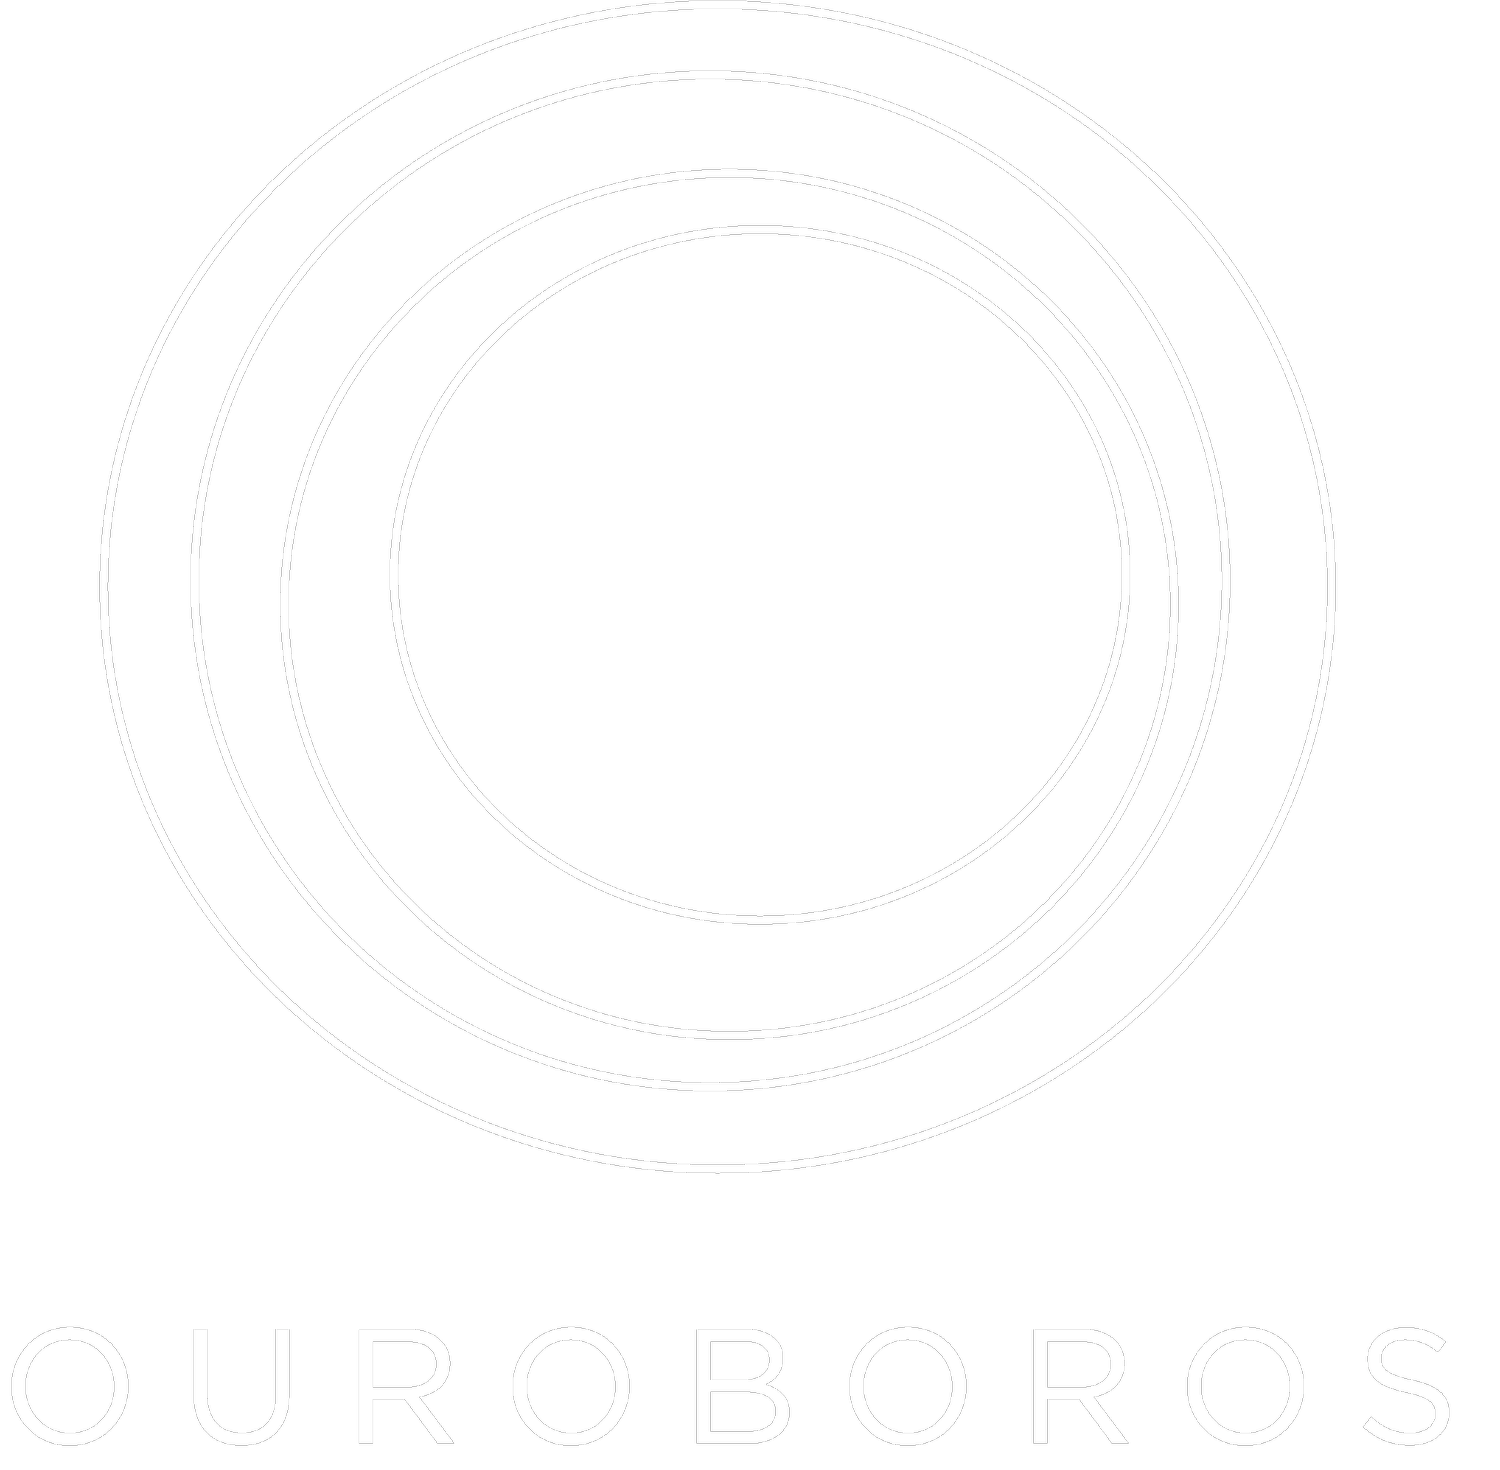 OUROBOROS